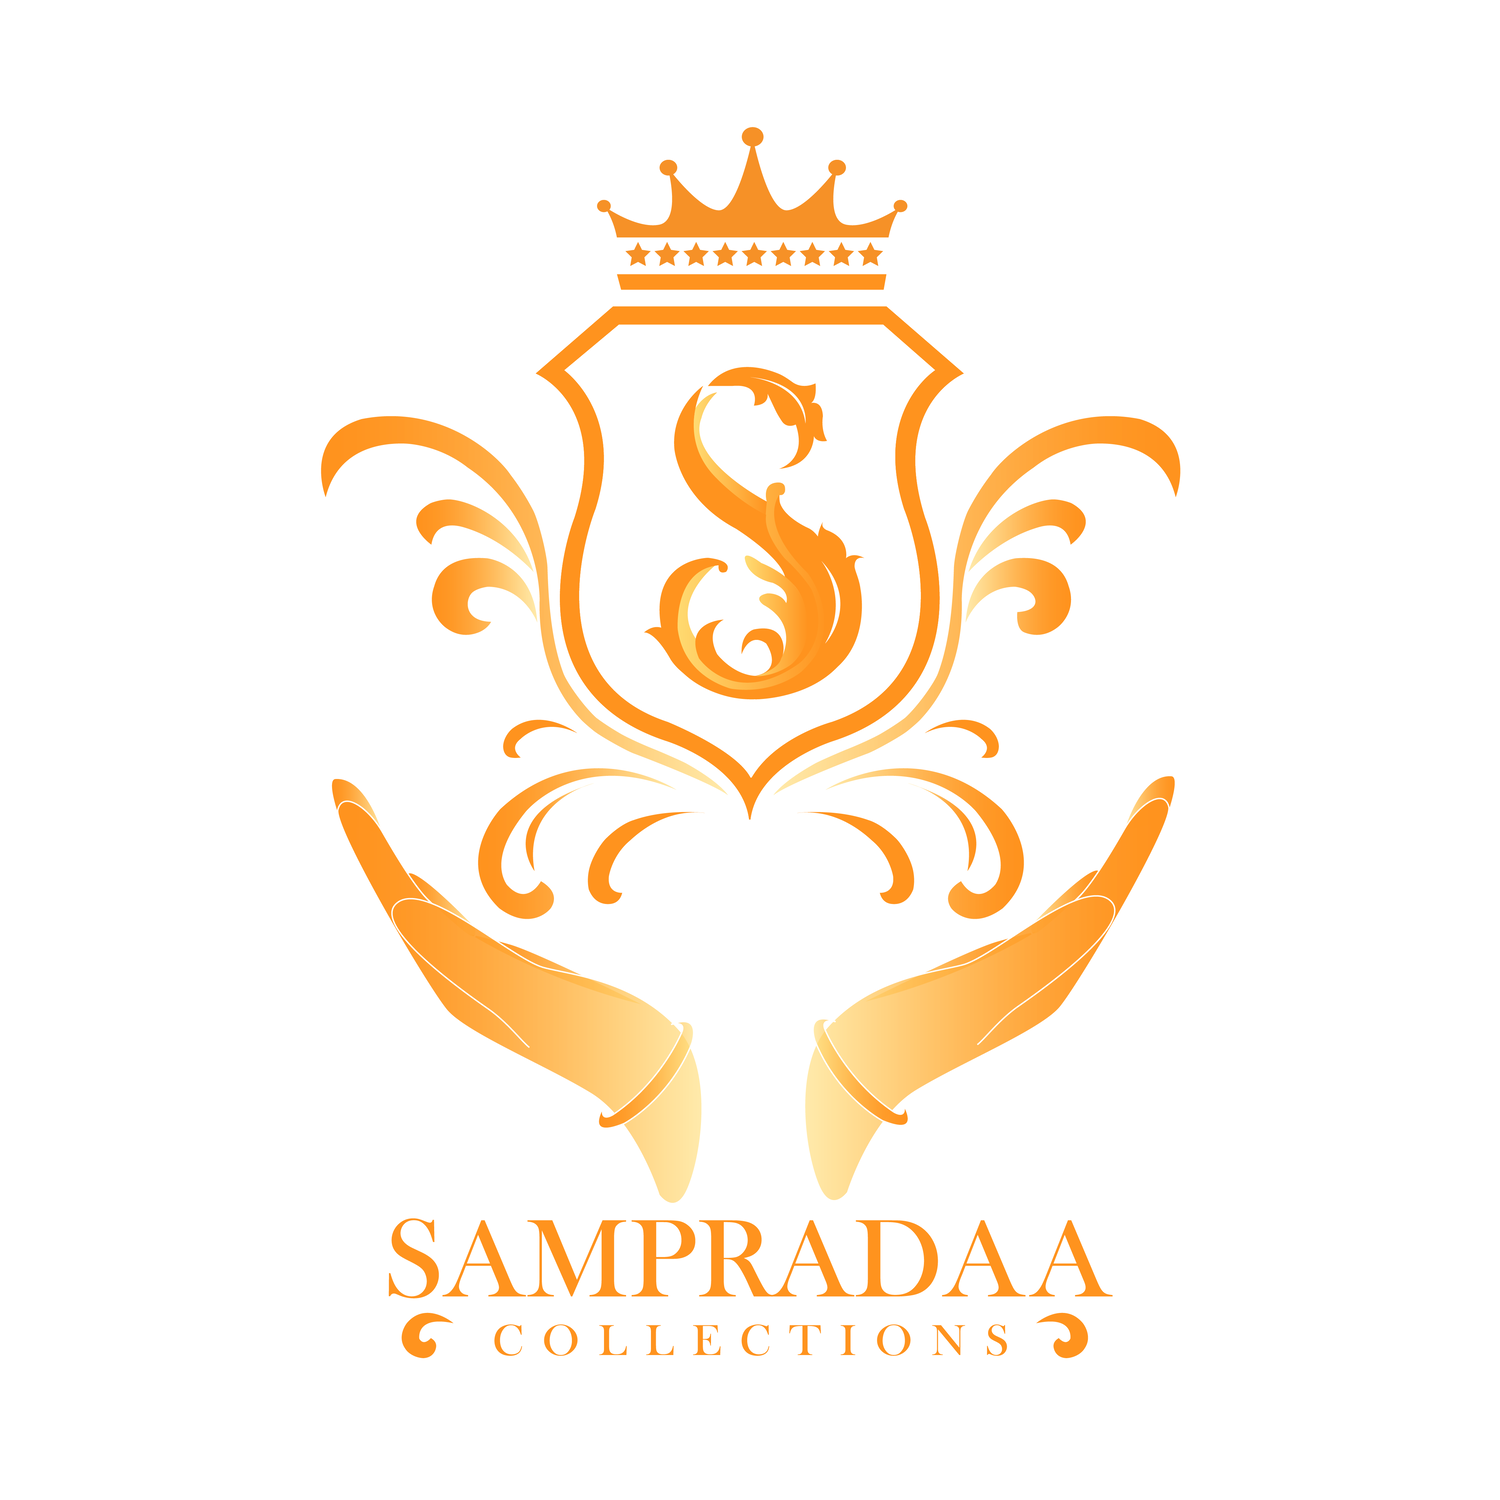 Sampradaa